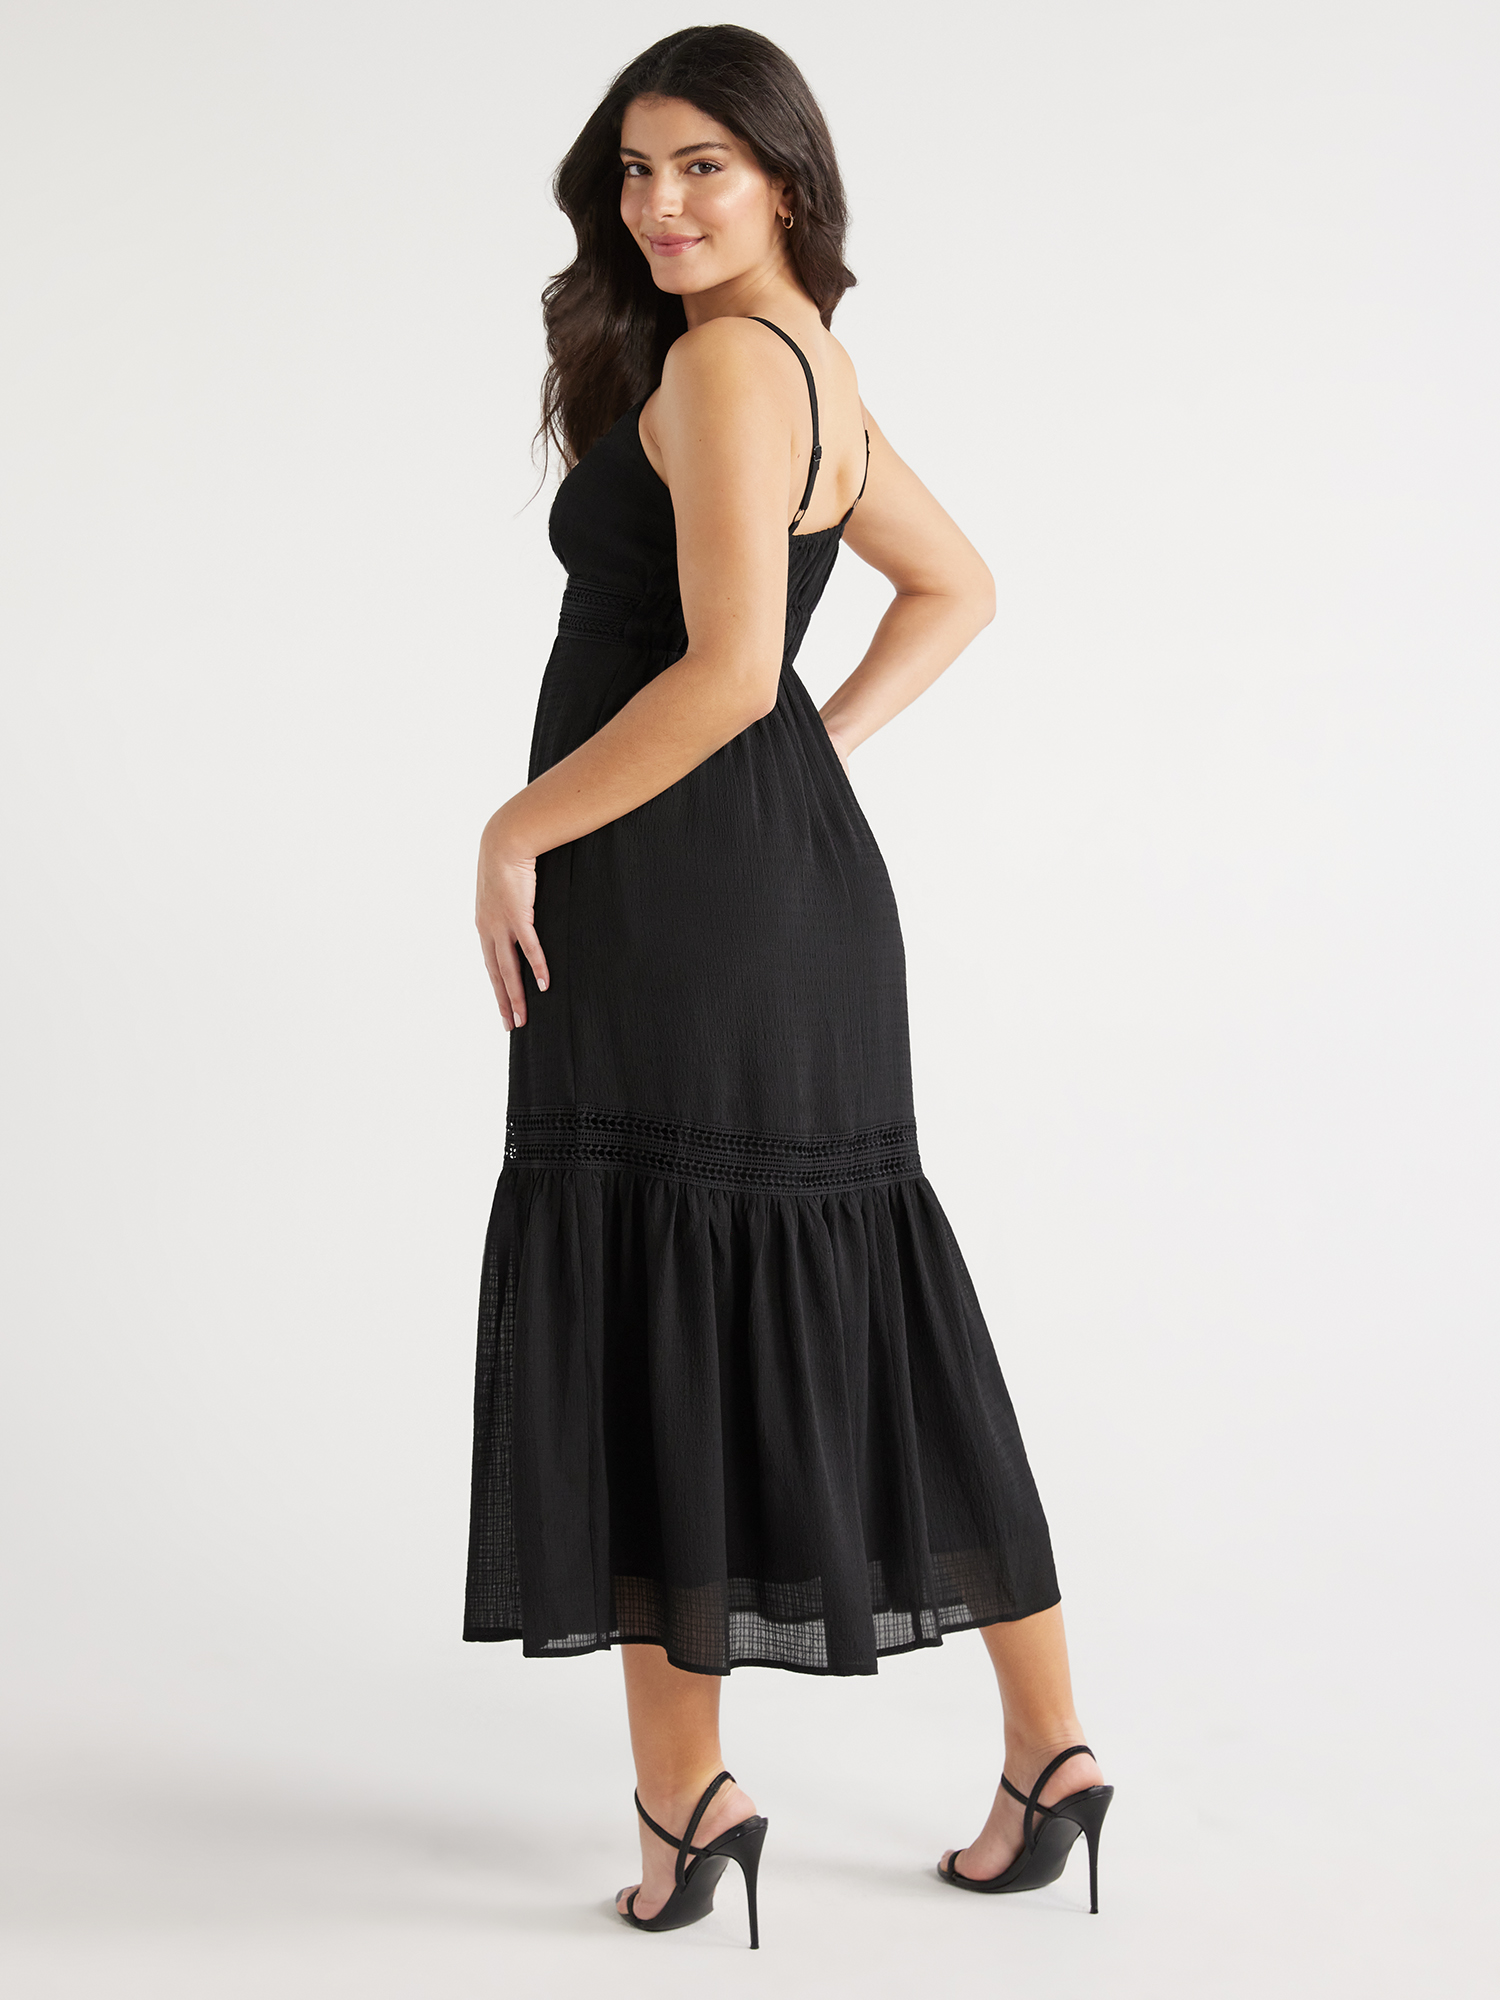 Sofia Jeans Women's Lace Trim Maxi Dress, Mid Calf Length, Sizes XS ...